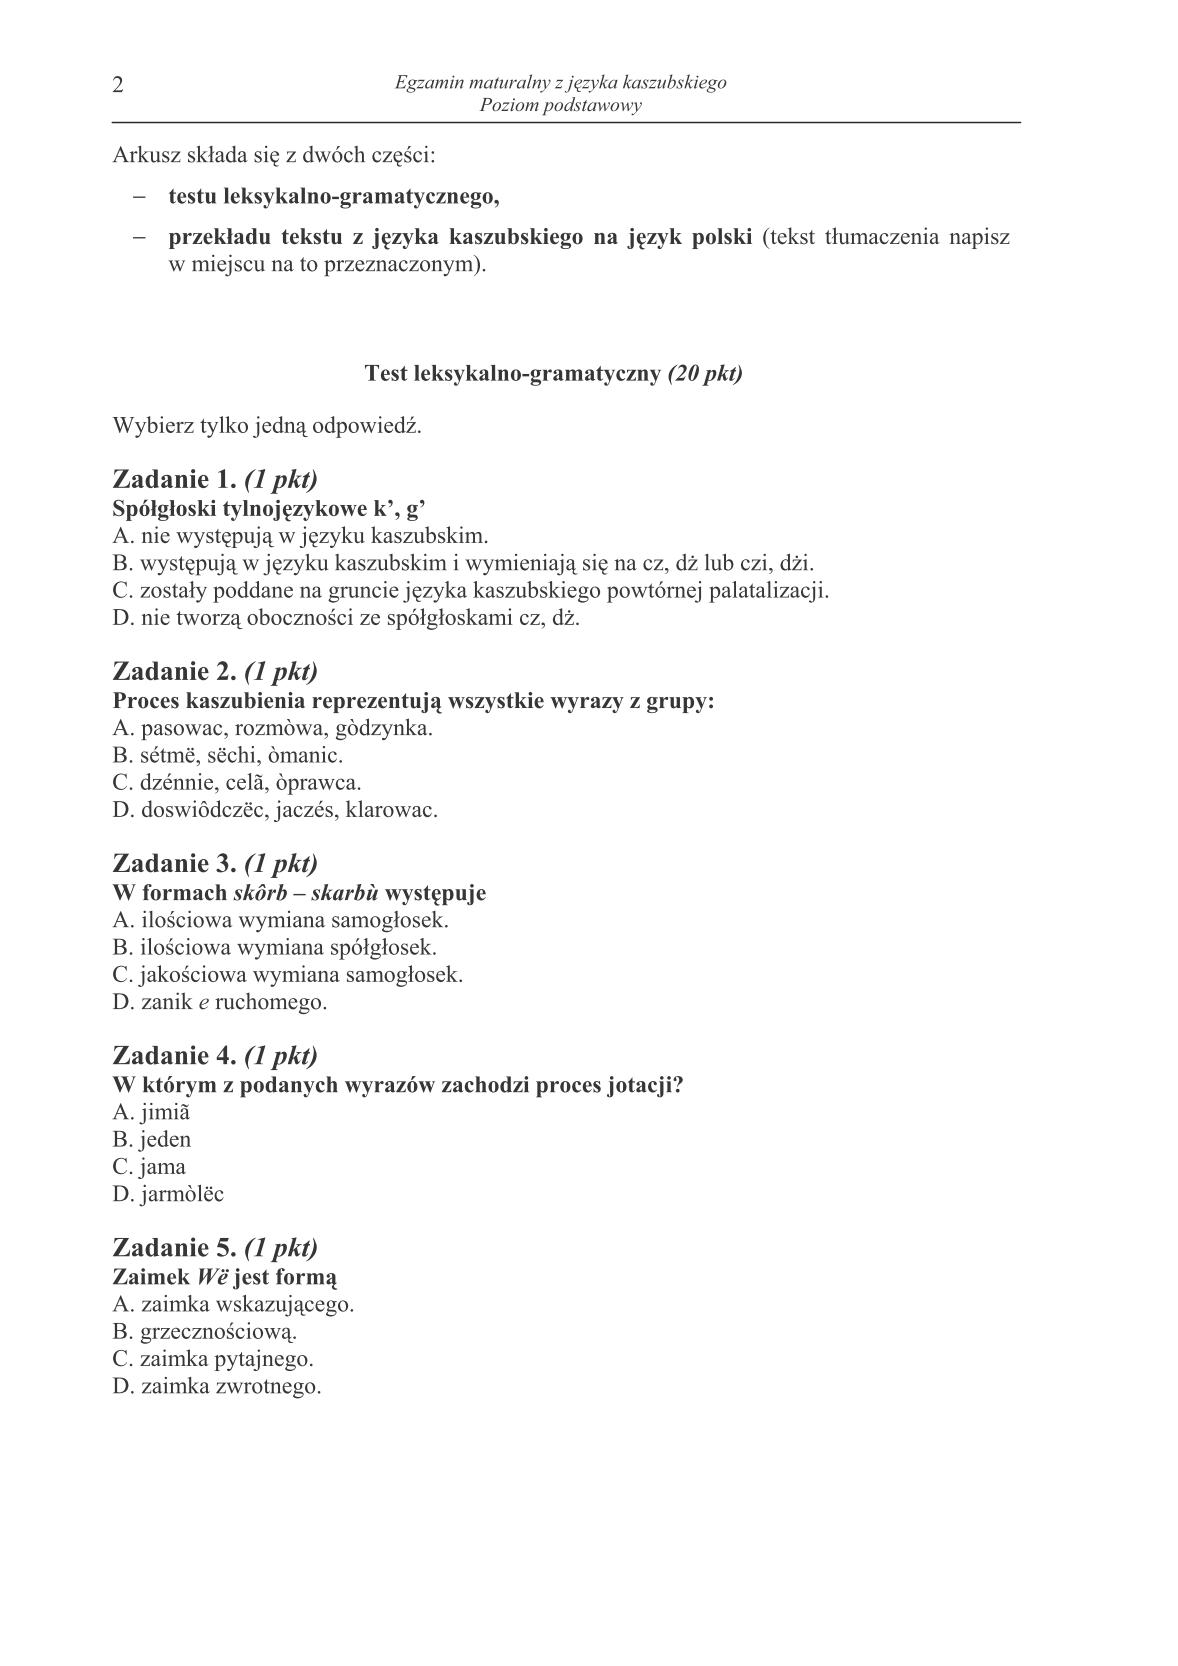 pytania-jezyk-kaszubski-poziom-podstawowy-matura-2014-str.2